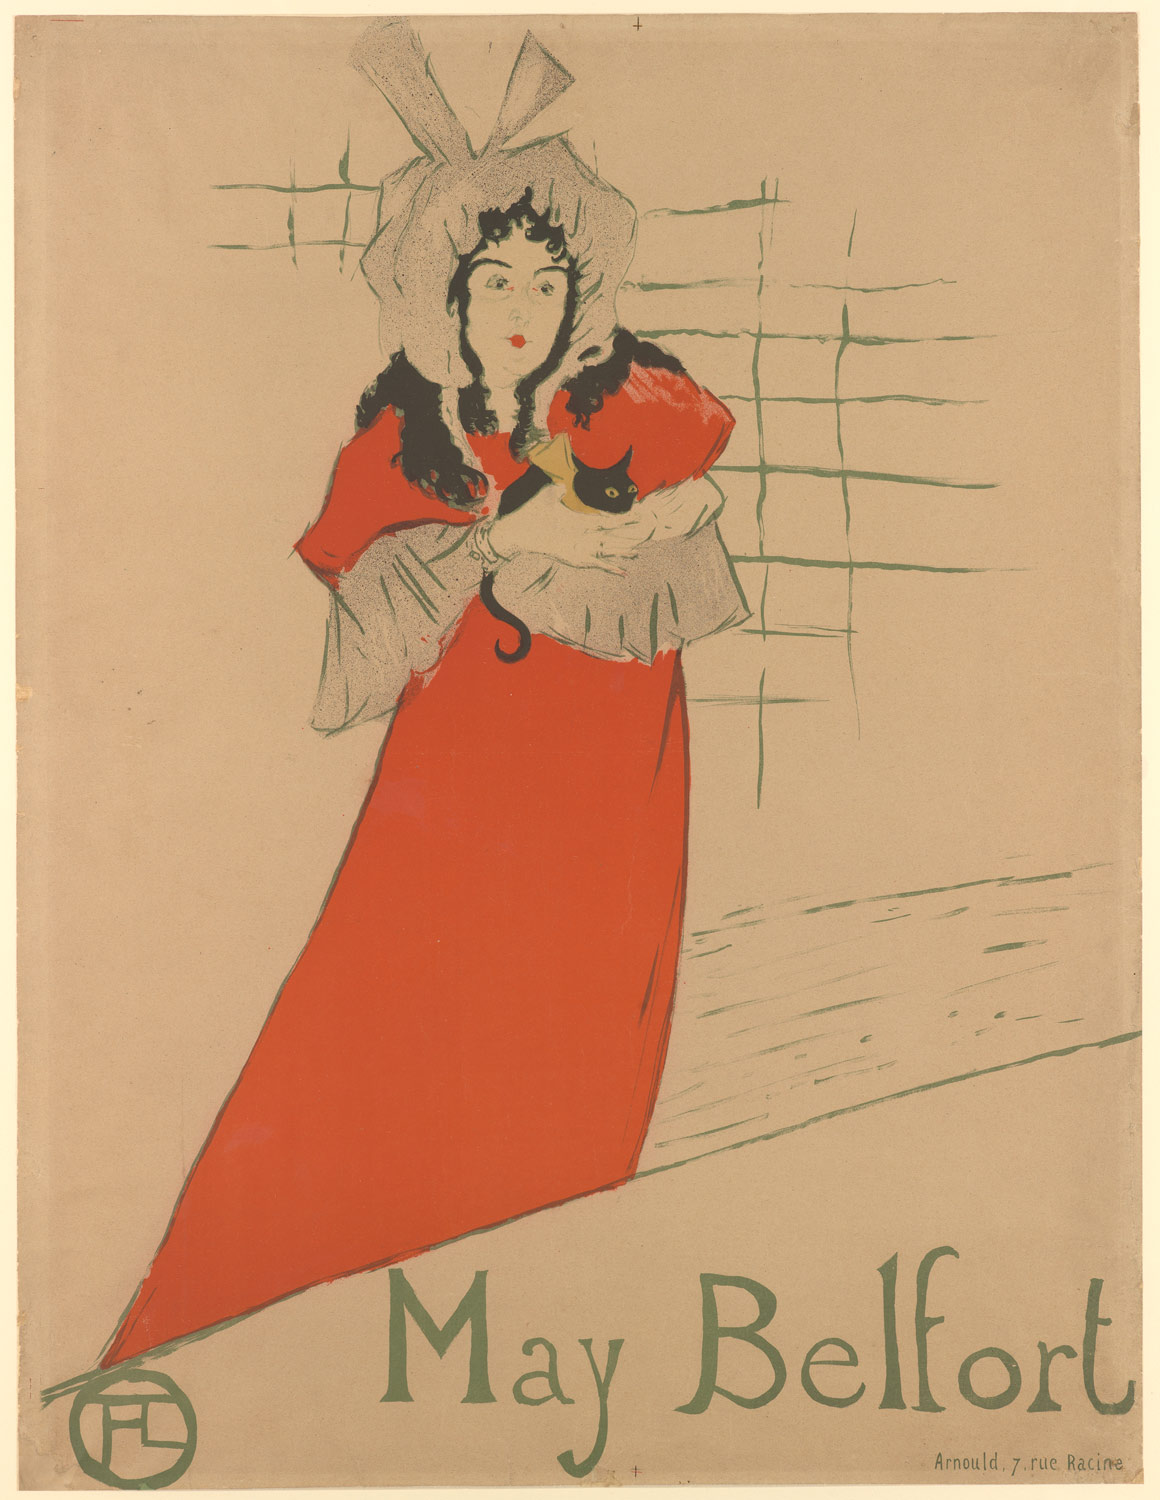 梅·贝尔福 by 亨利 劳特累克 - 1895 - 62 x 80 cm 